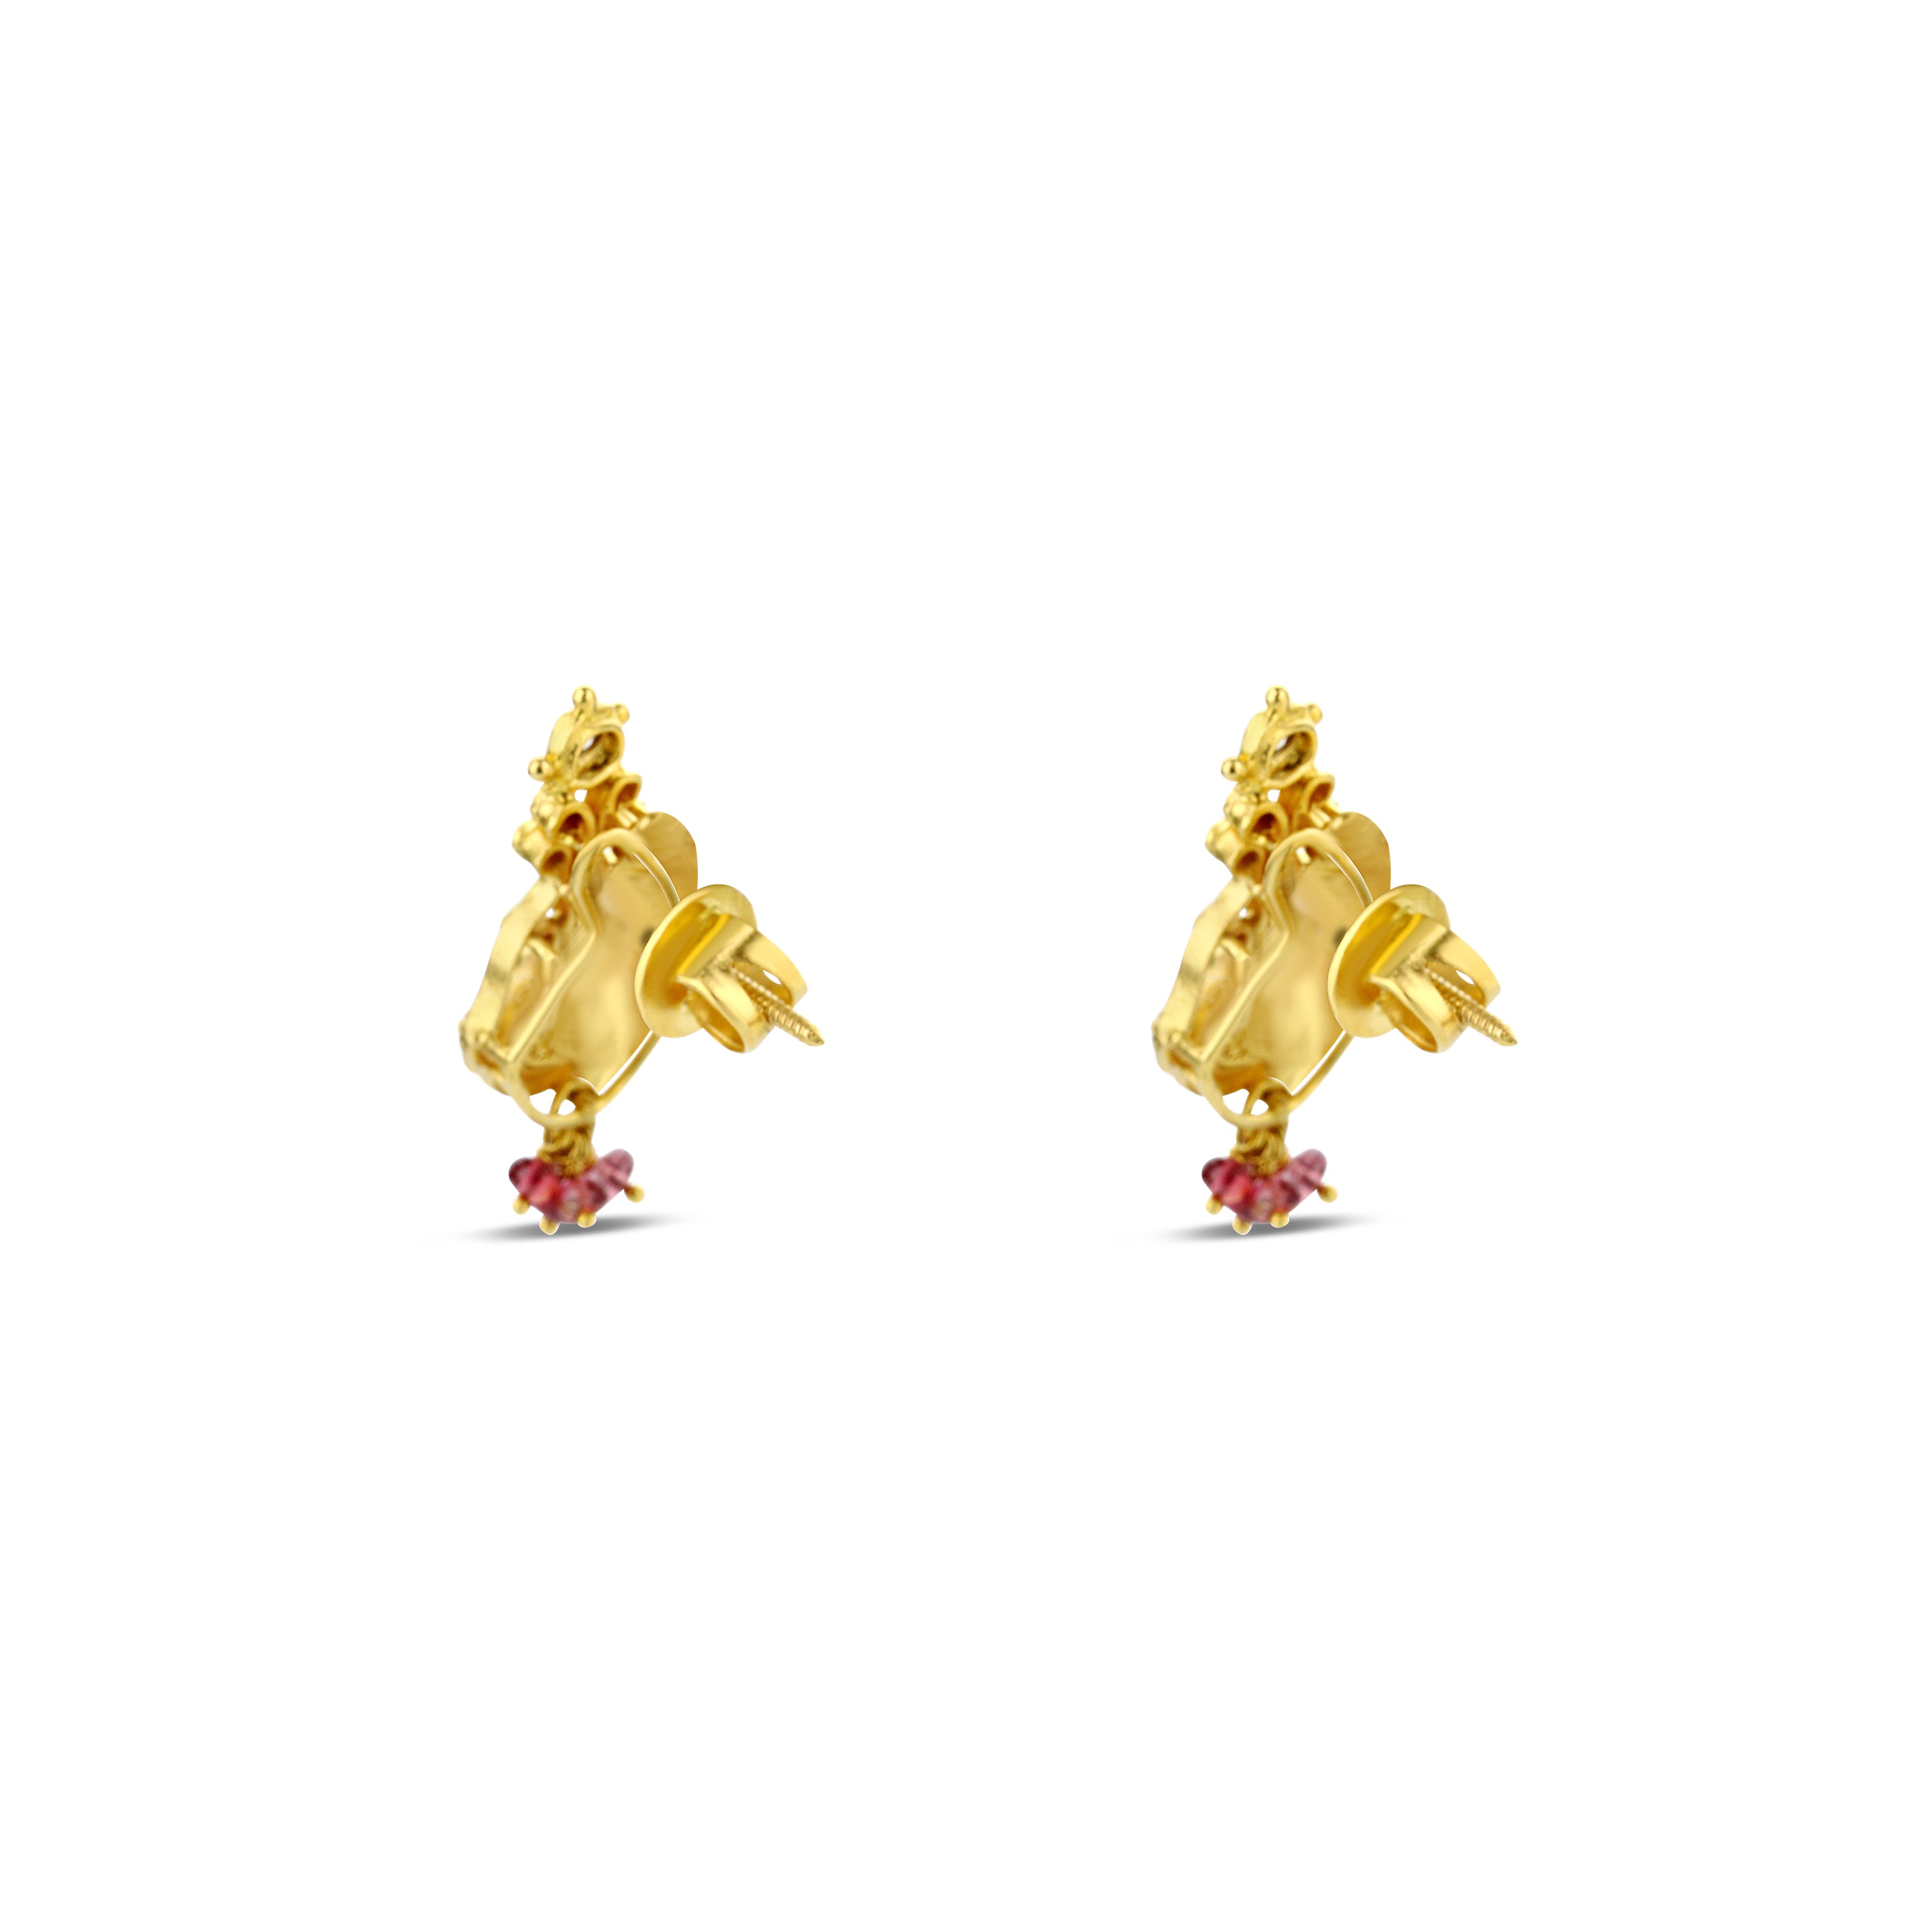 22K Gold Indian Inspired Diamond Earrings